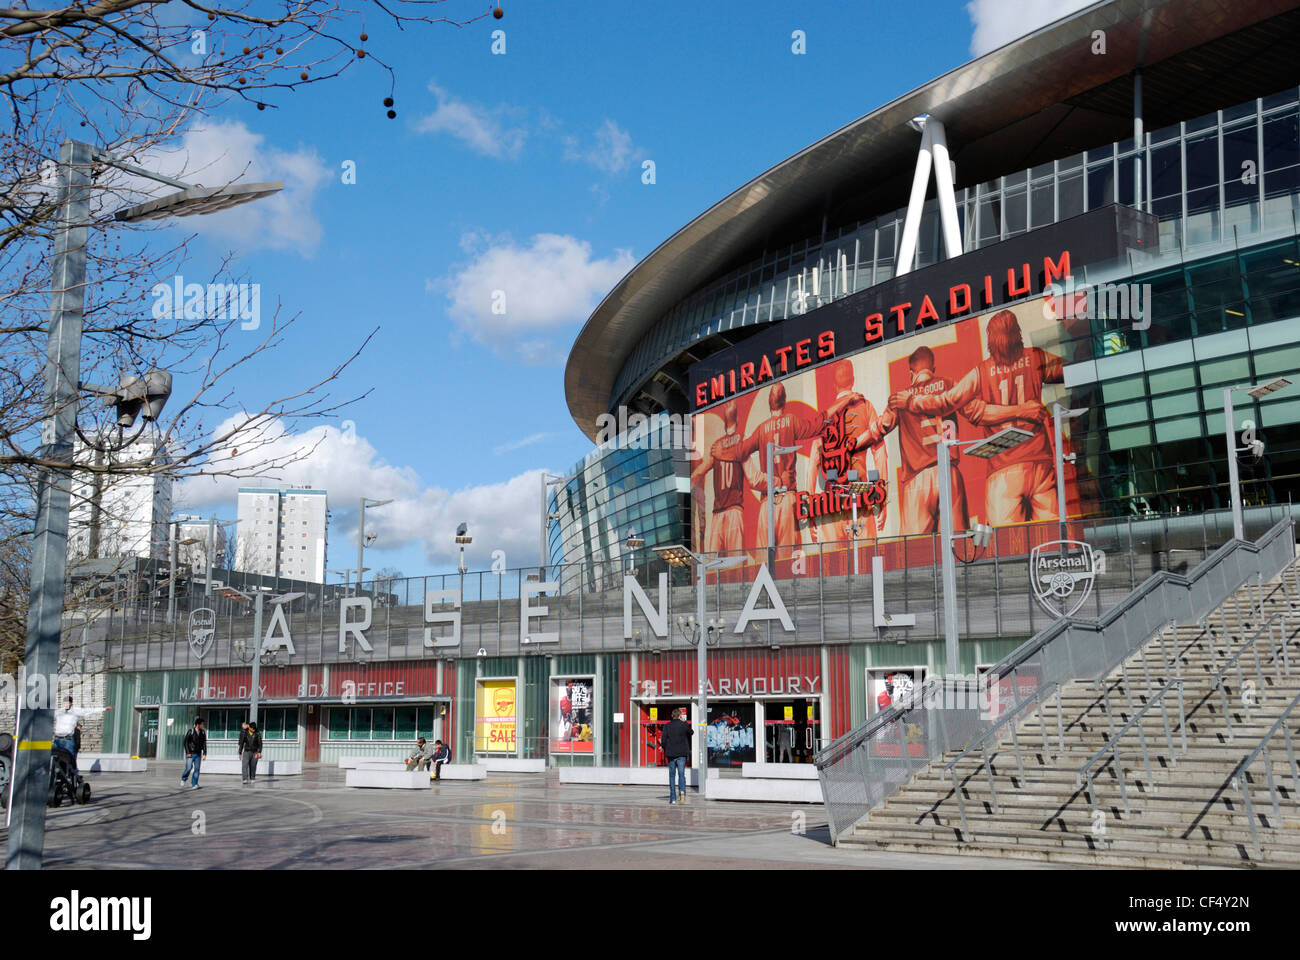 El exterior del Emirates Stadium, hogar del Arsenal Football Club. Foto de stock